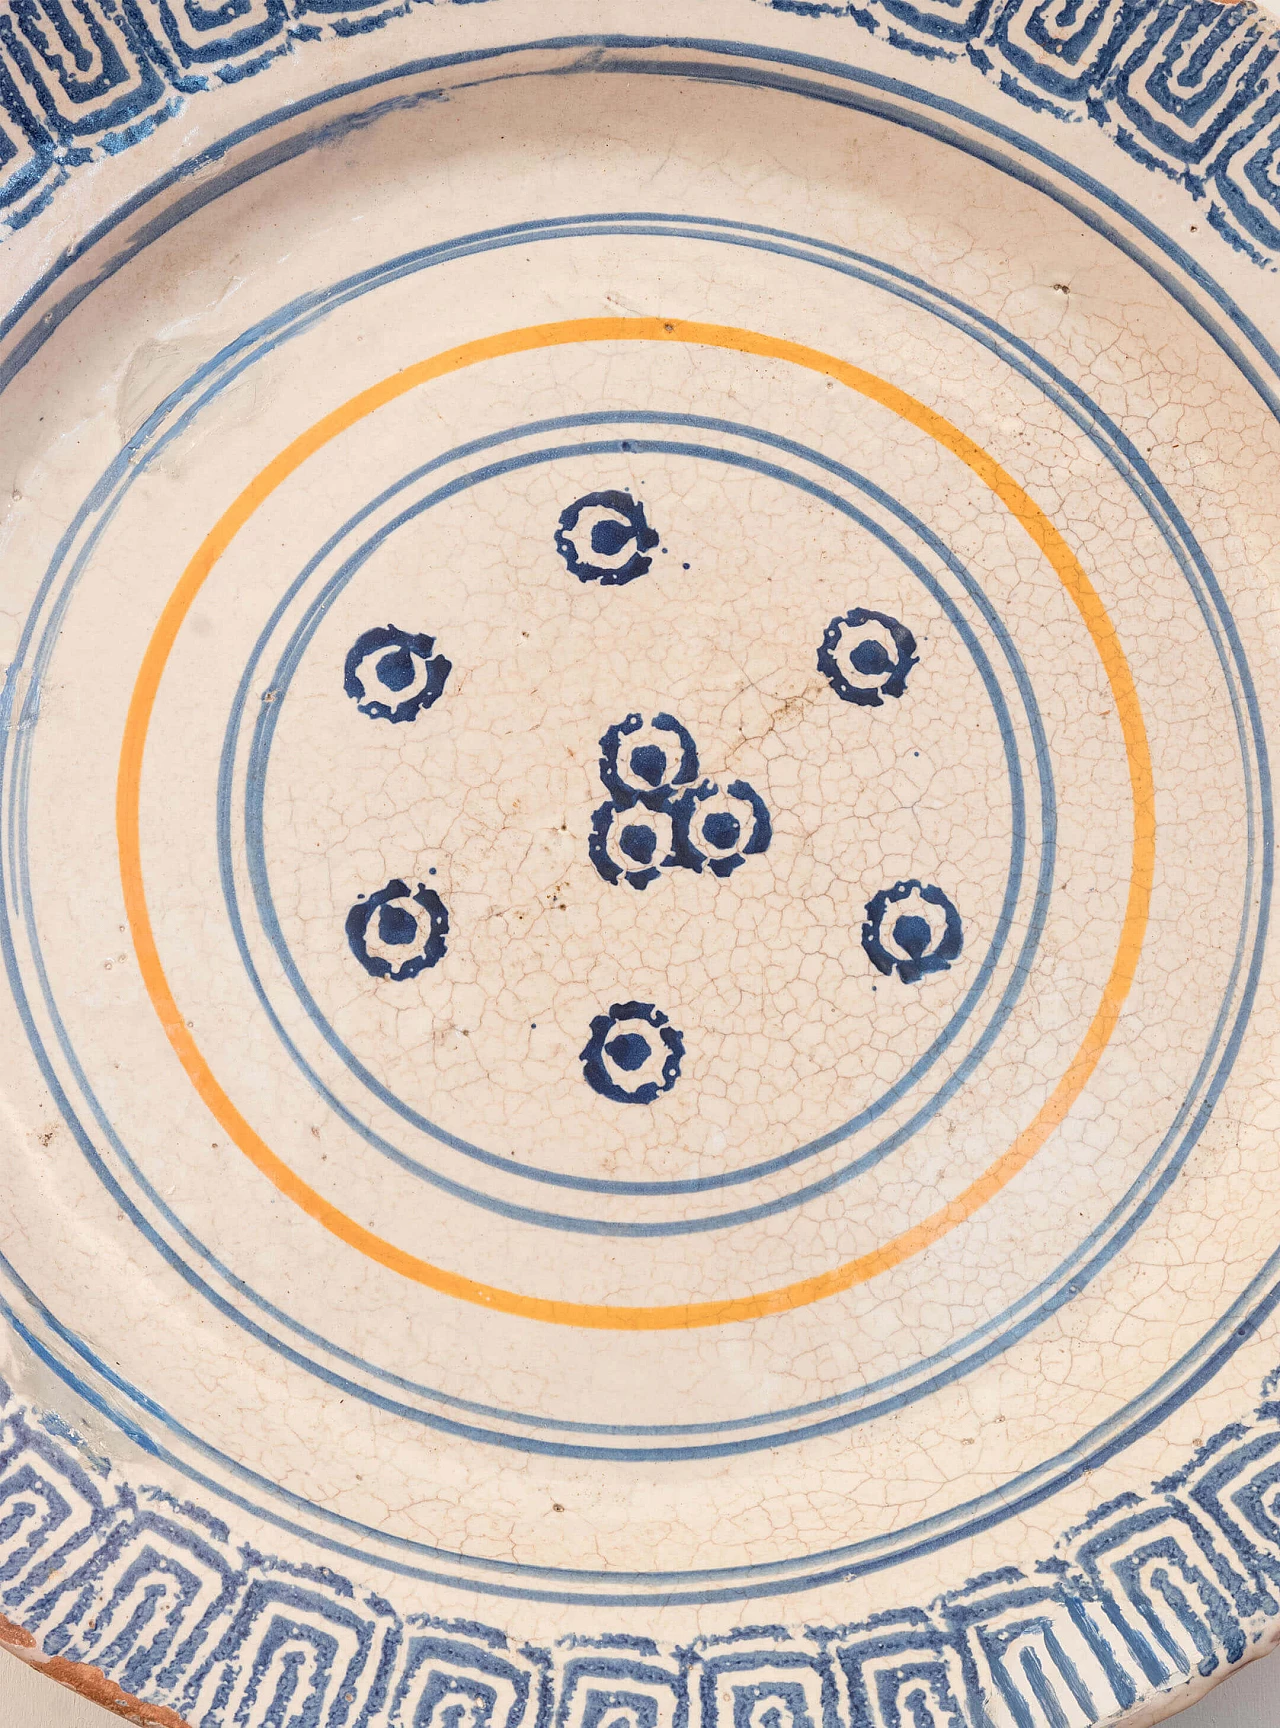 Laterza ceramic plate, Puglia region, 18th century 1084707